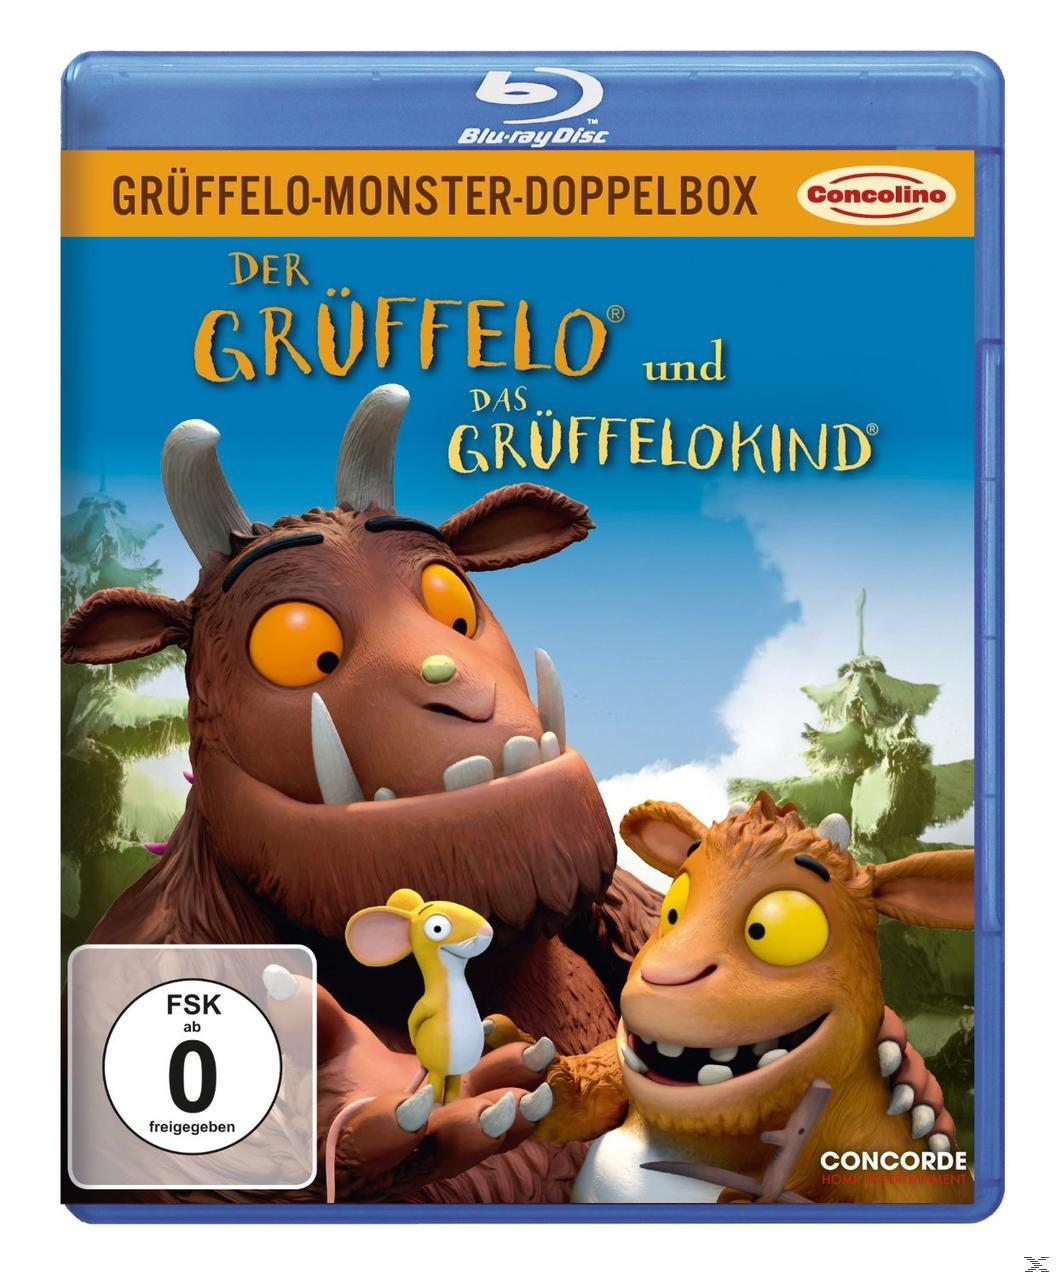 Grüffelo-Monster-Doppelbox - Der Grüffelo Blu-ray Das und Grüffelokind